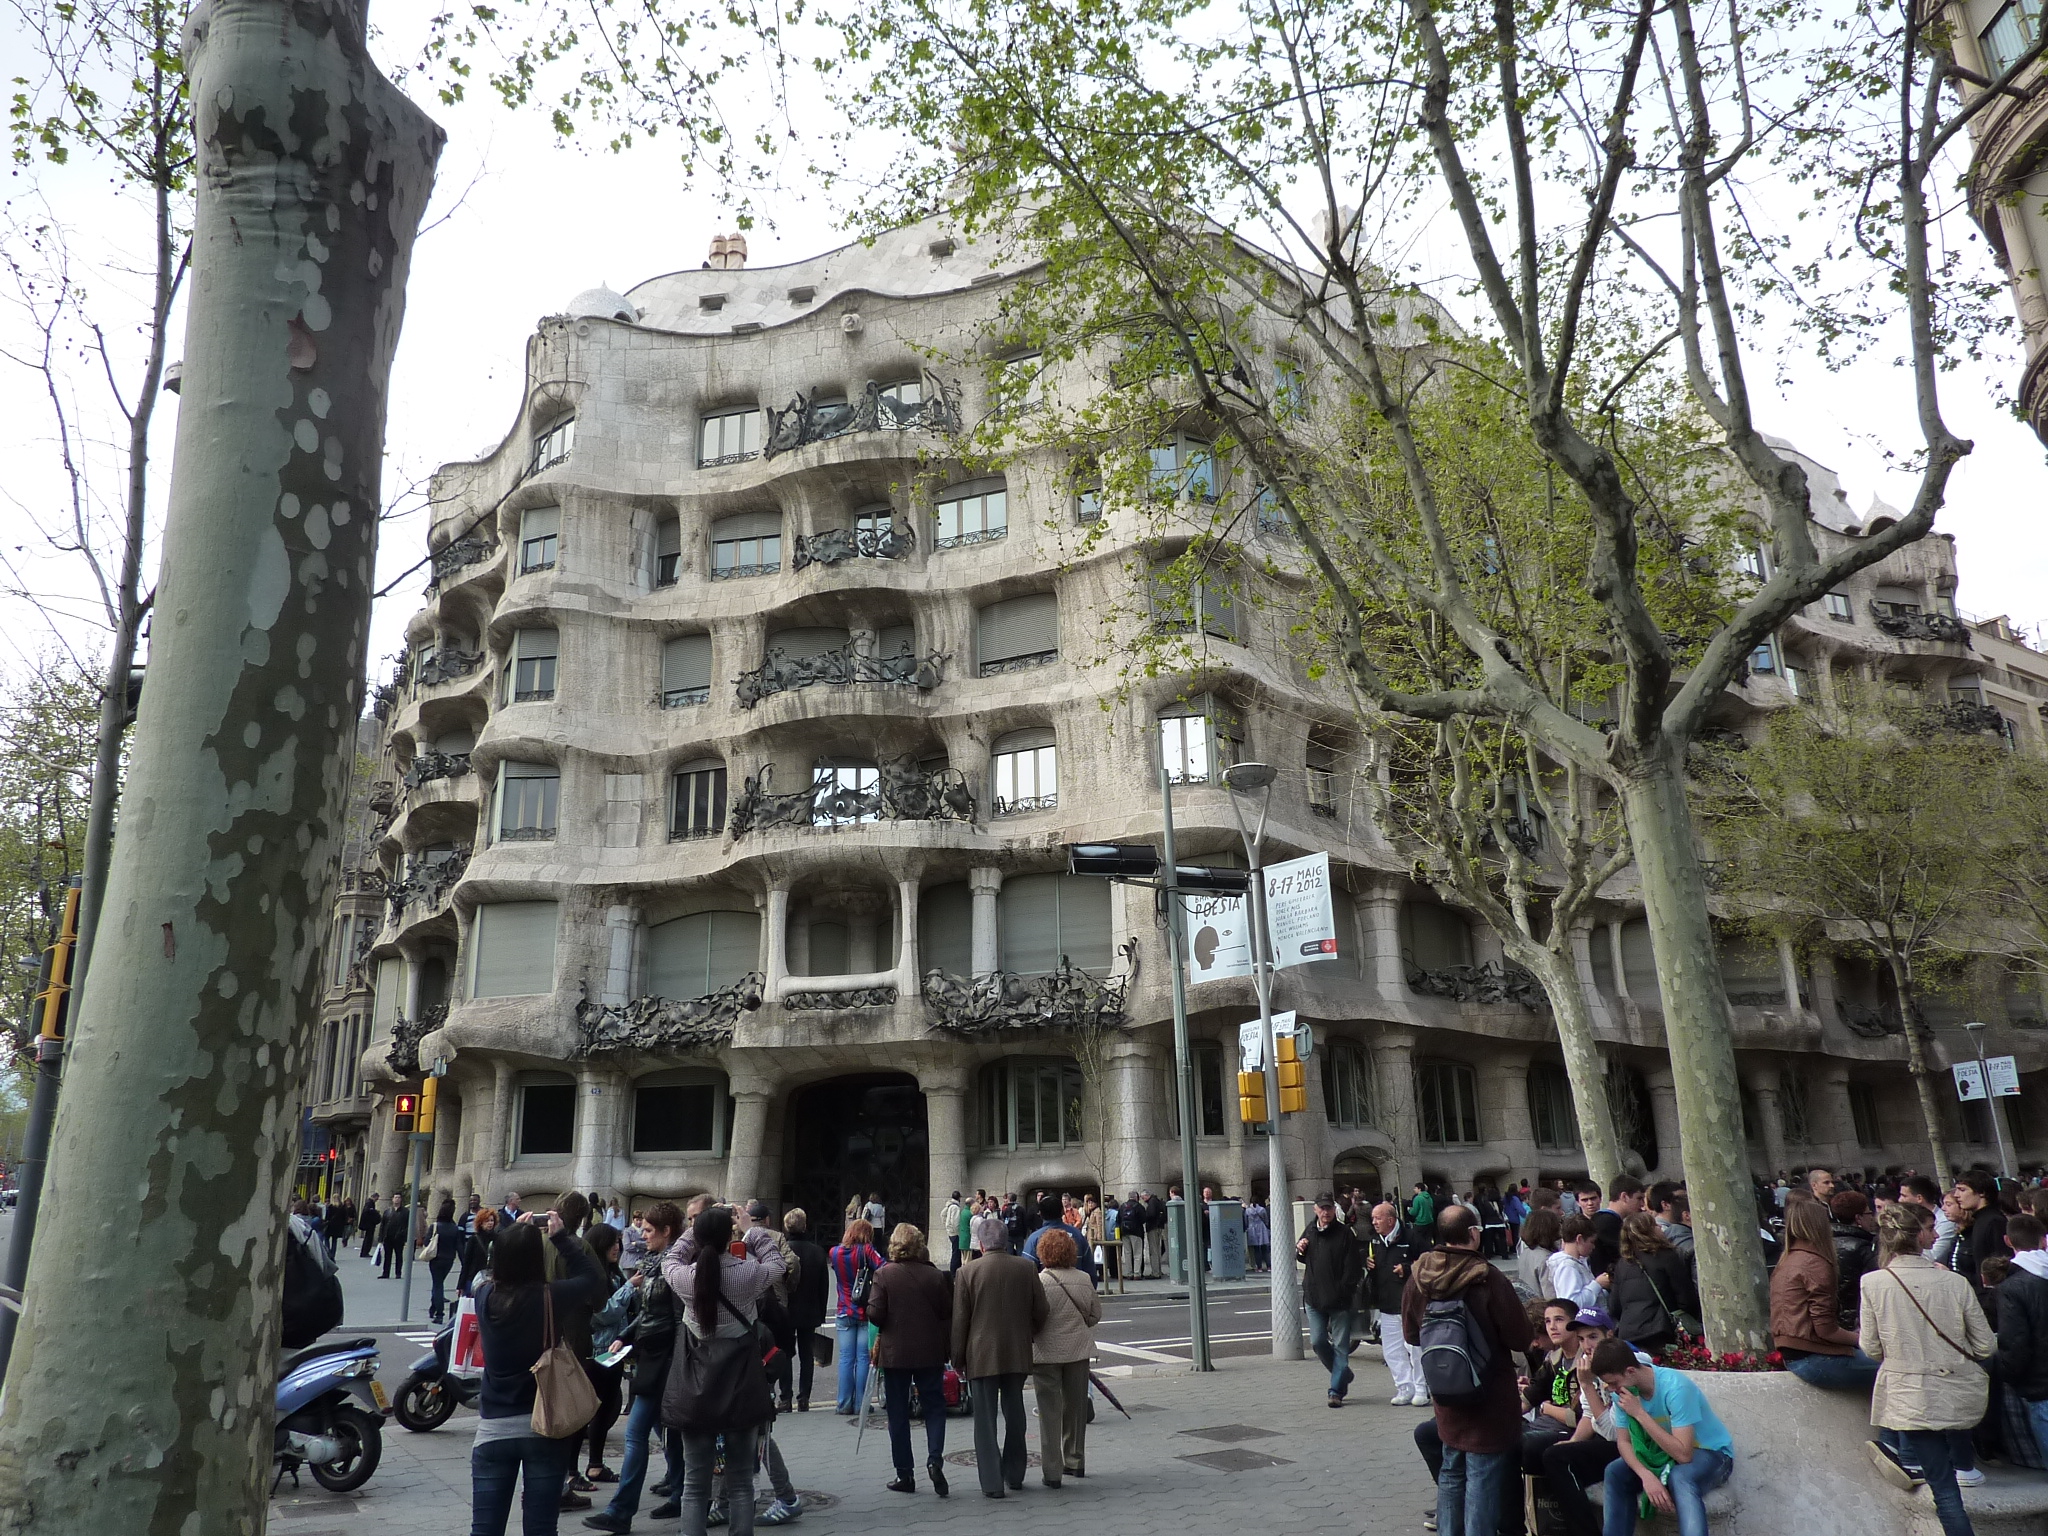 Gaudi's Casa Milà